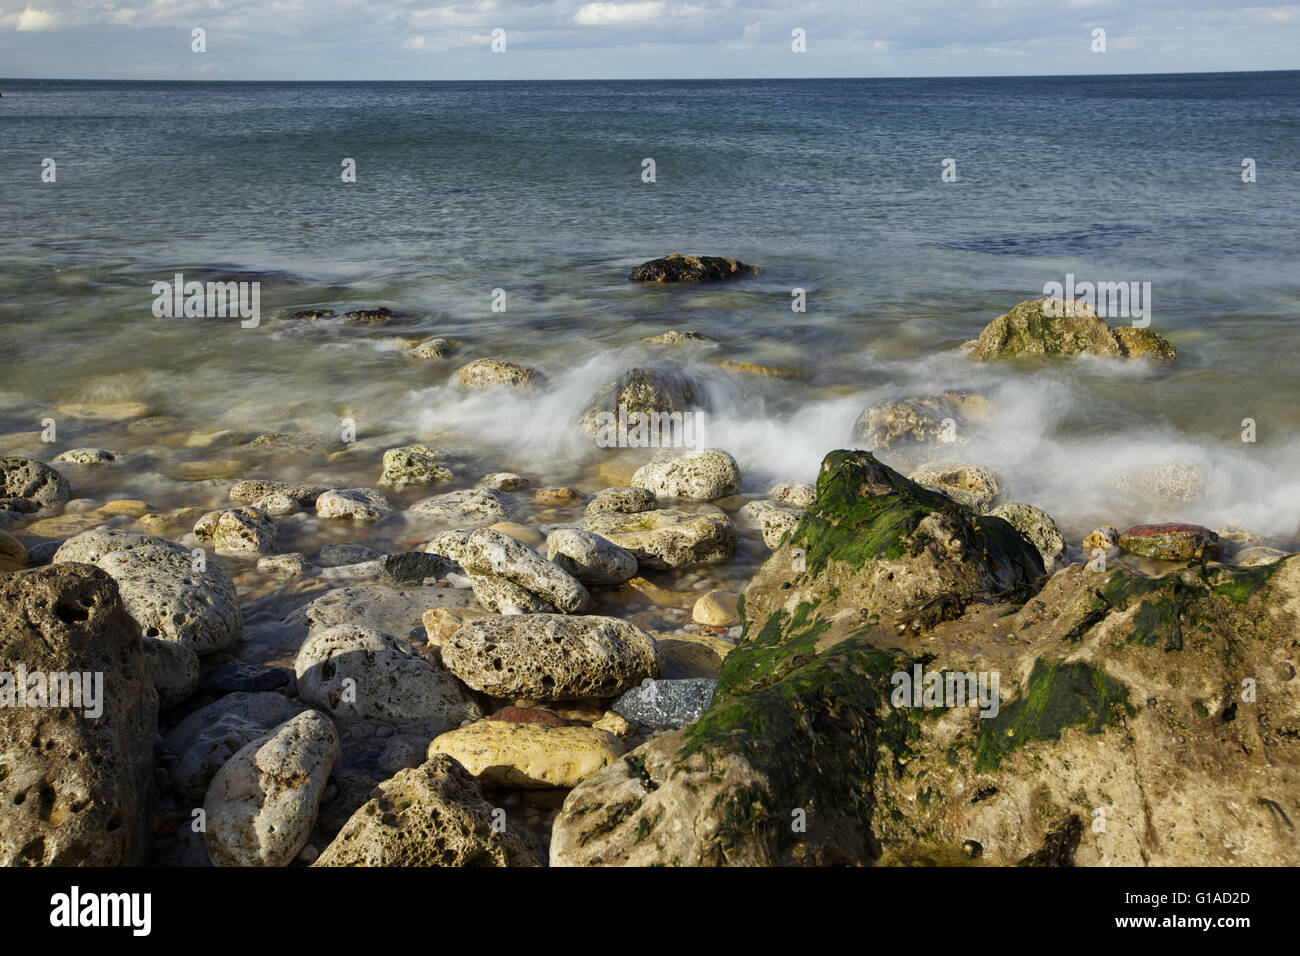 La côte de la mer avec des pierres, des vagues en slow motion Banque D'Images